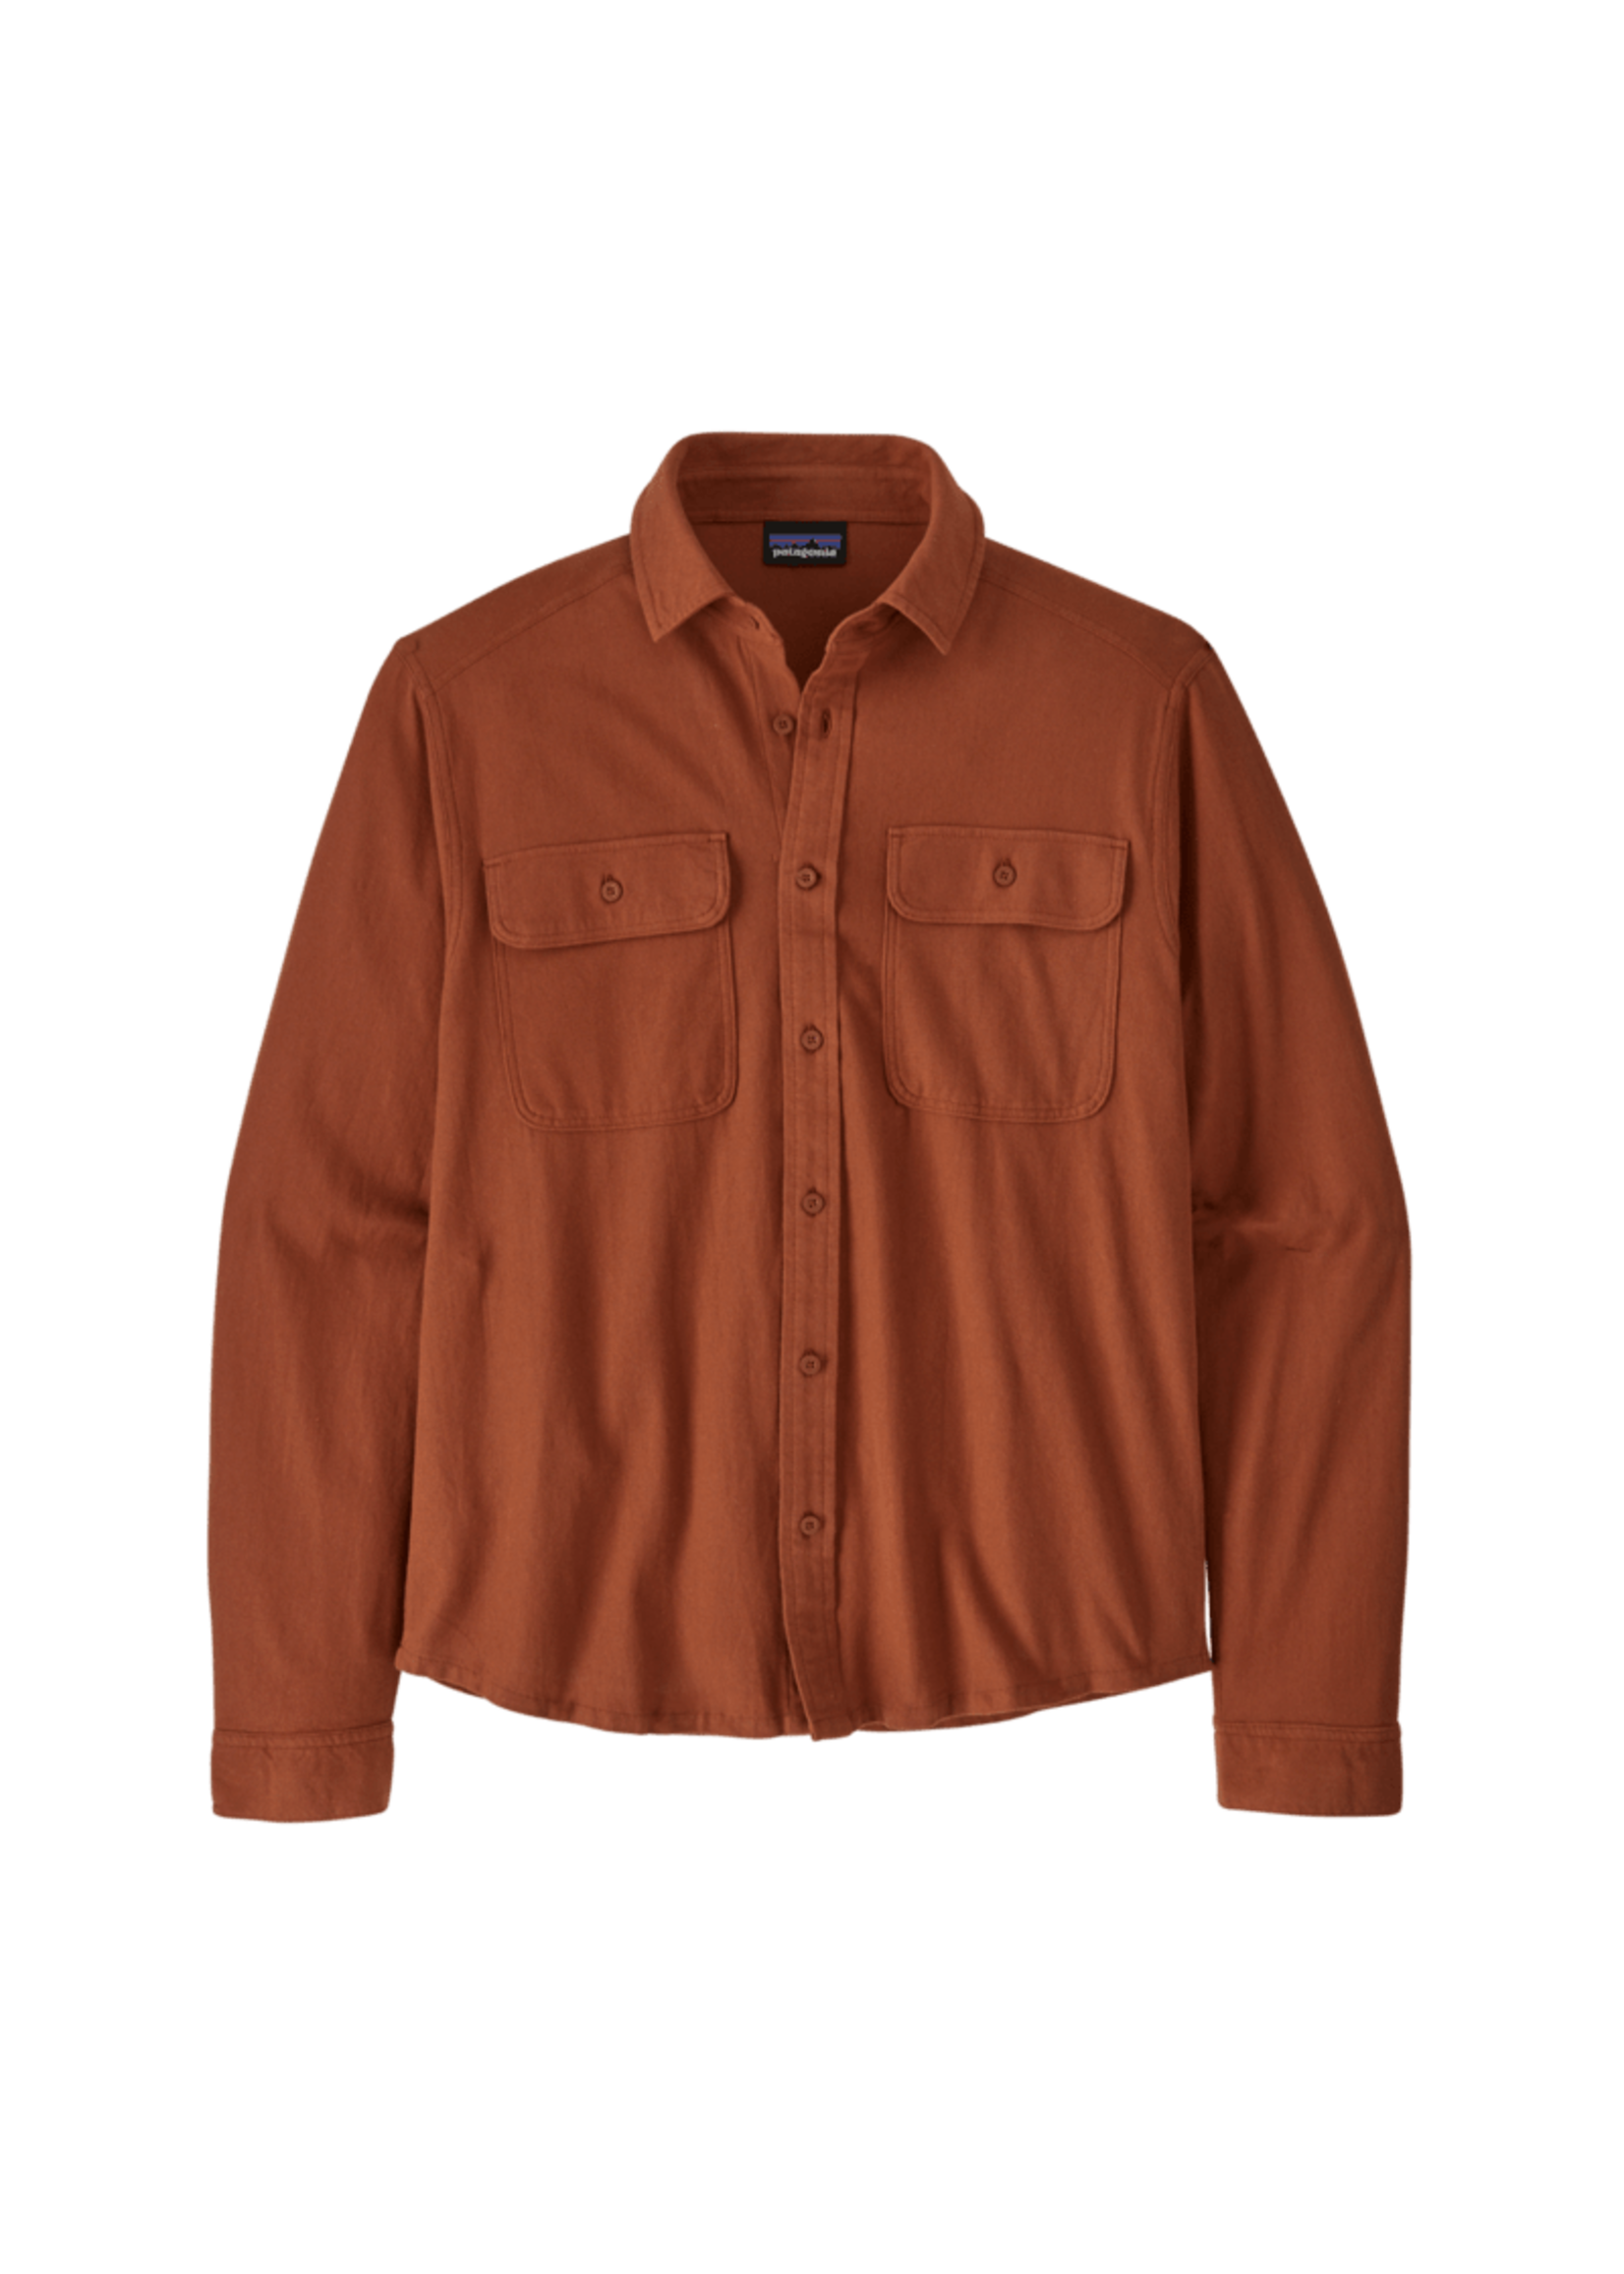 Patagonia Men's Knoven Shirt - Sisu Brown